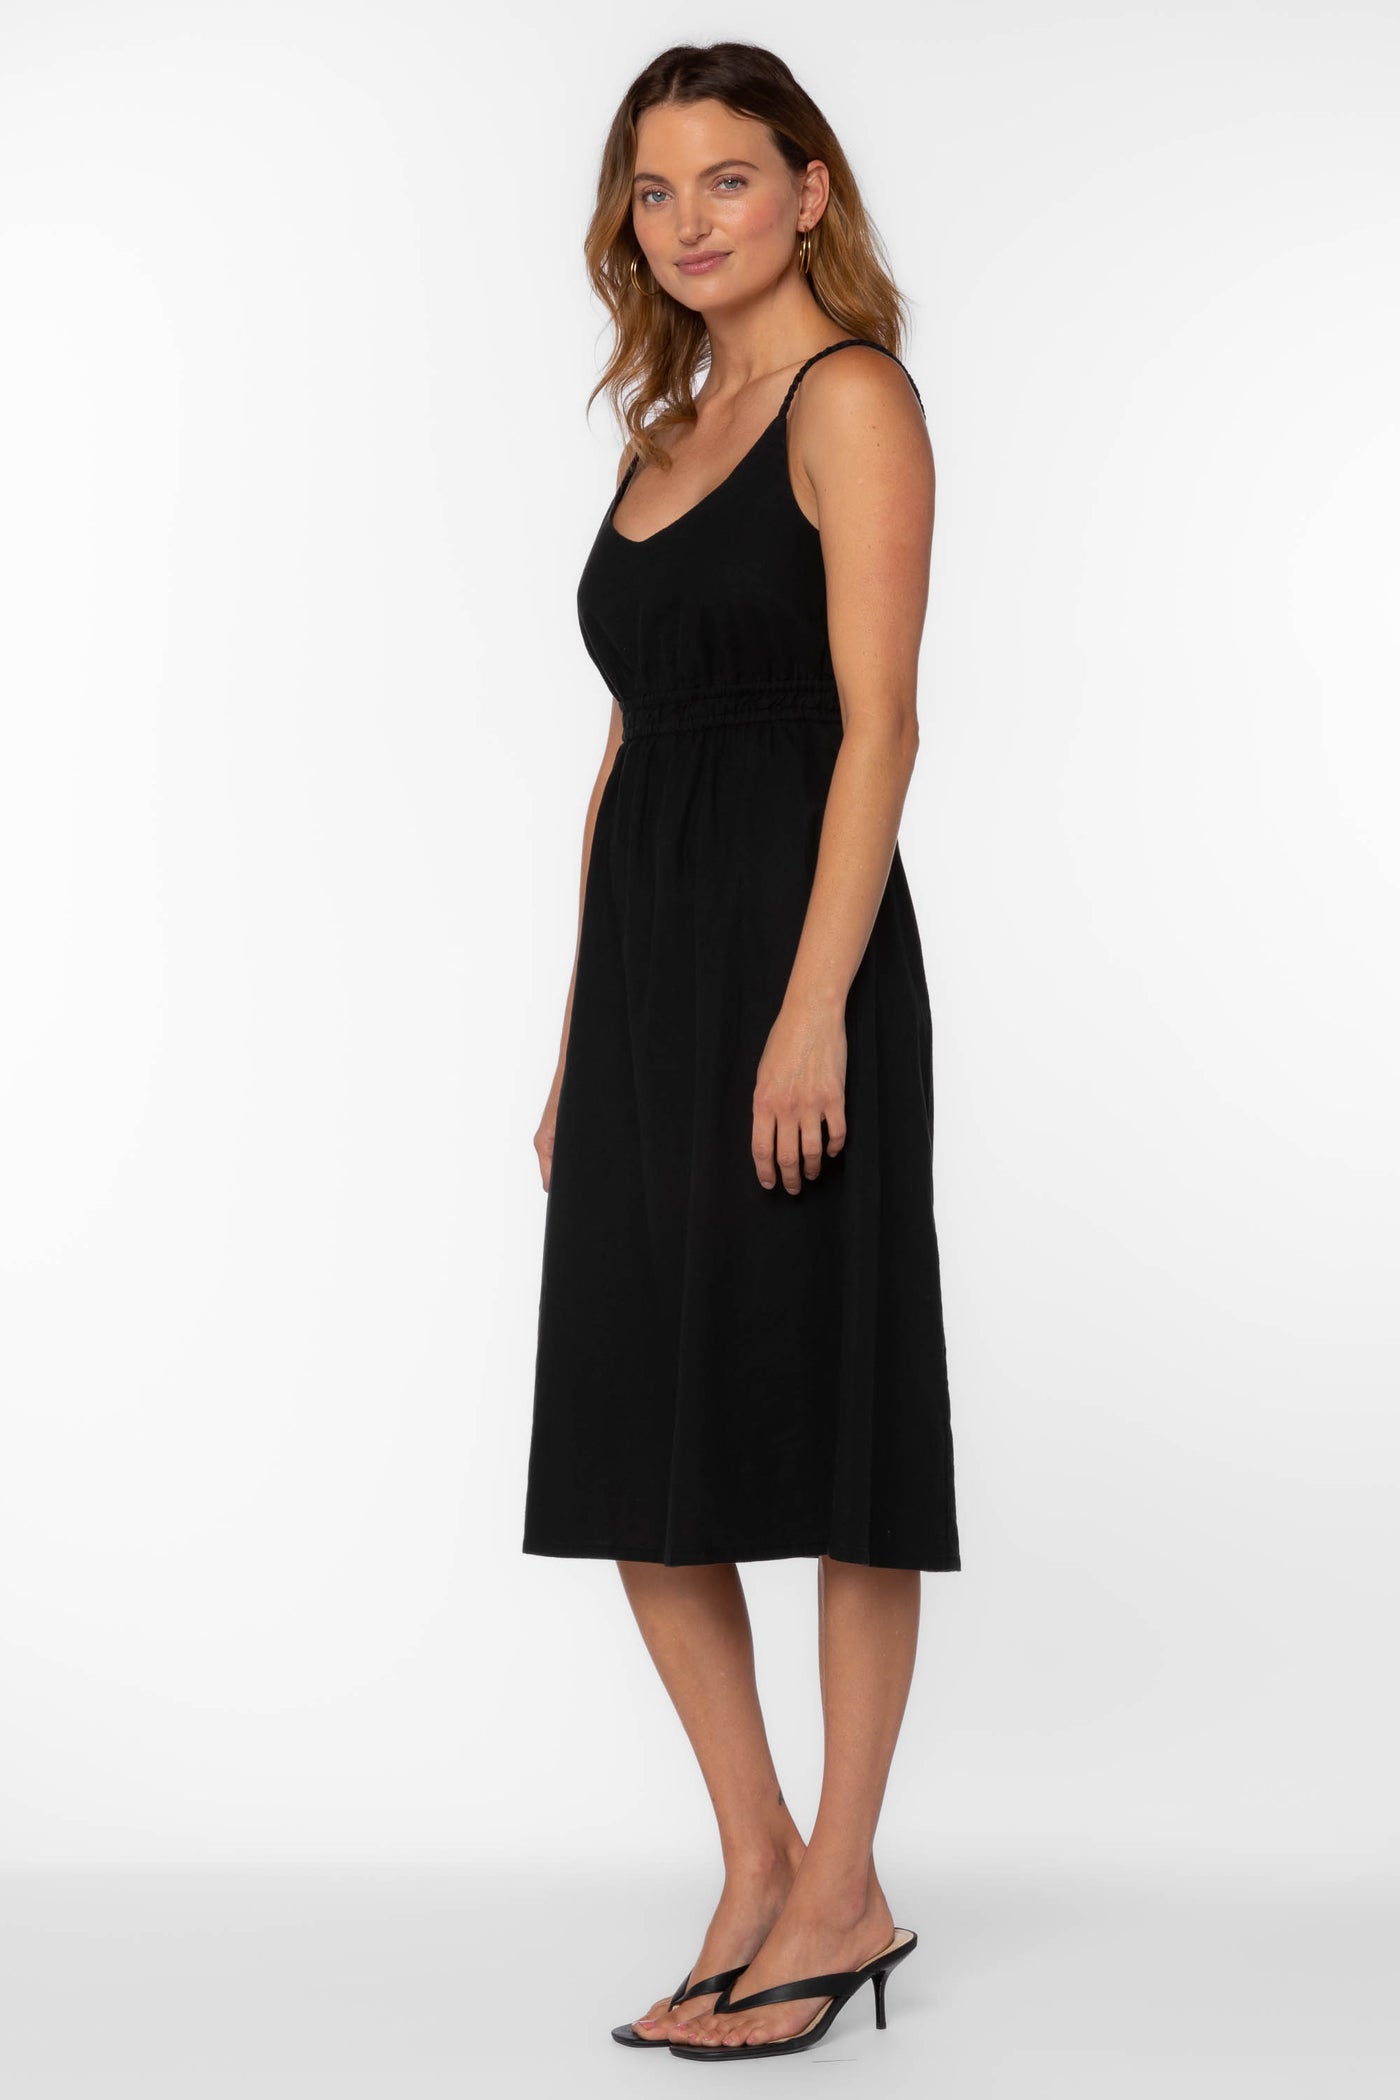 Vestie Black Dress - Dresses - Velvet Heart Clothing